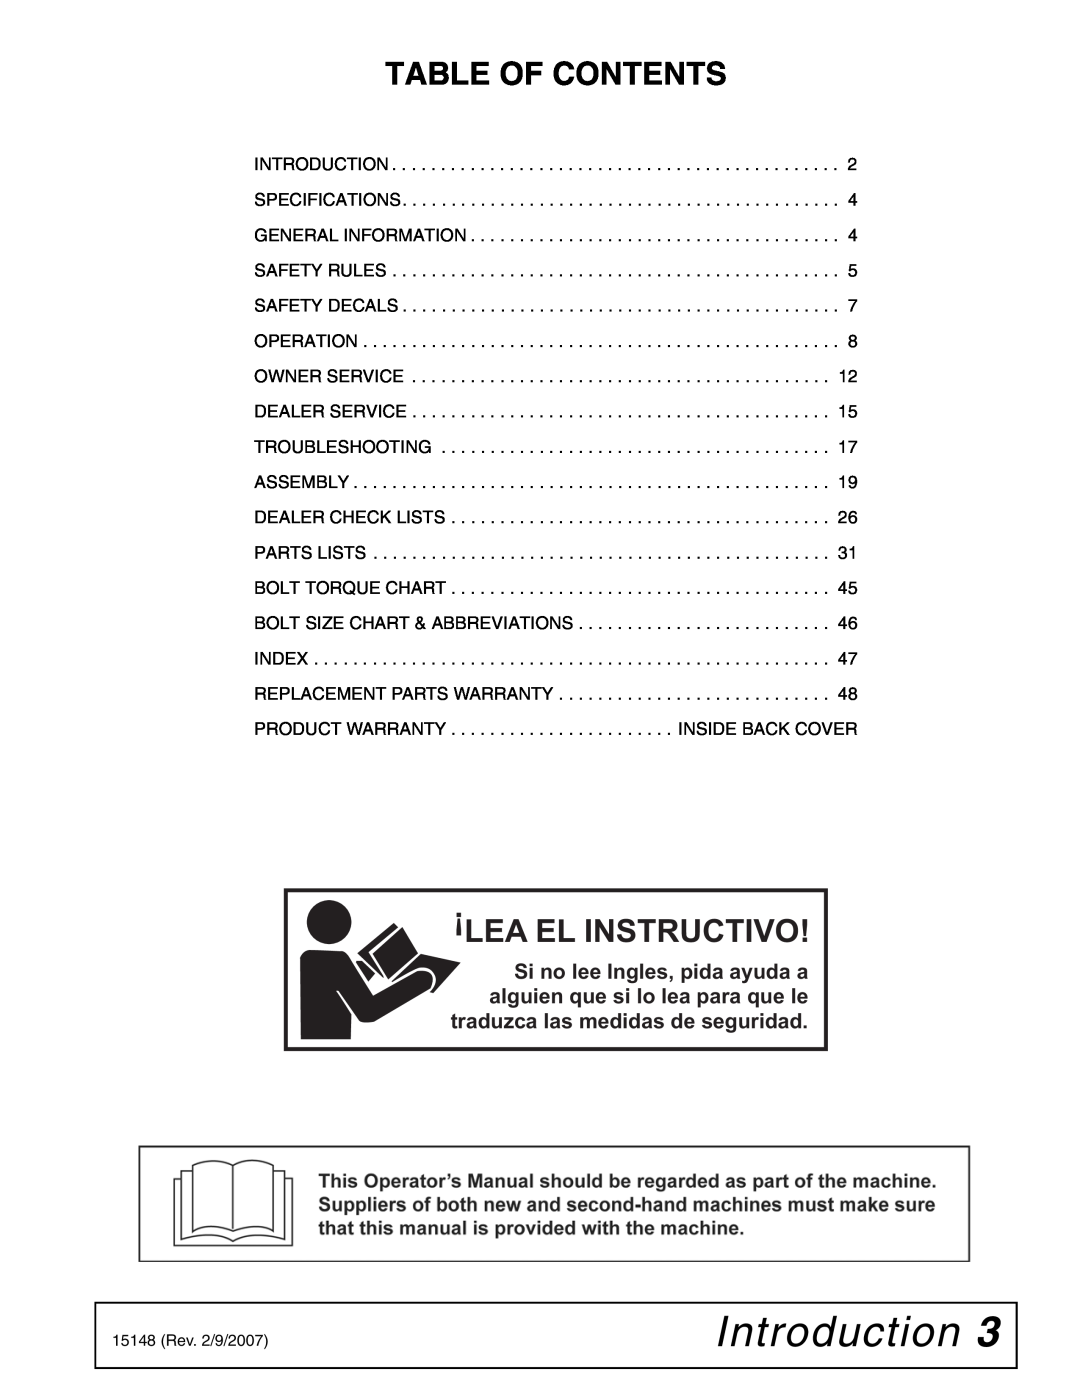 Woods Equipment L306A-3, L59A-3 manual Introduction, Table Of Contents, Lea El Instructivo 